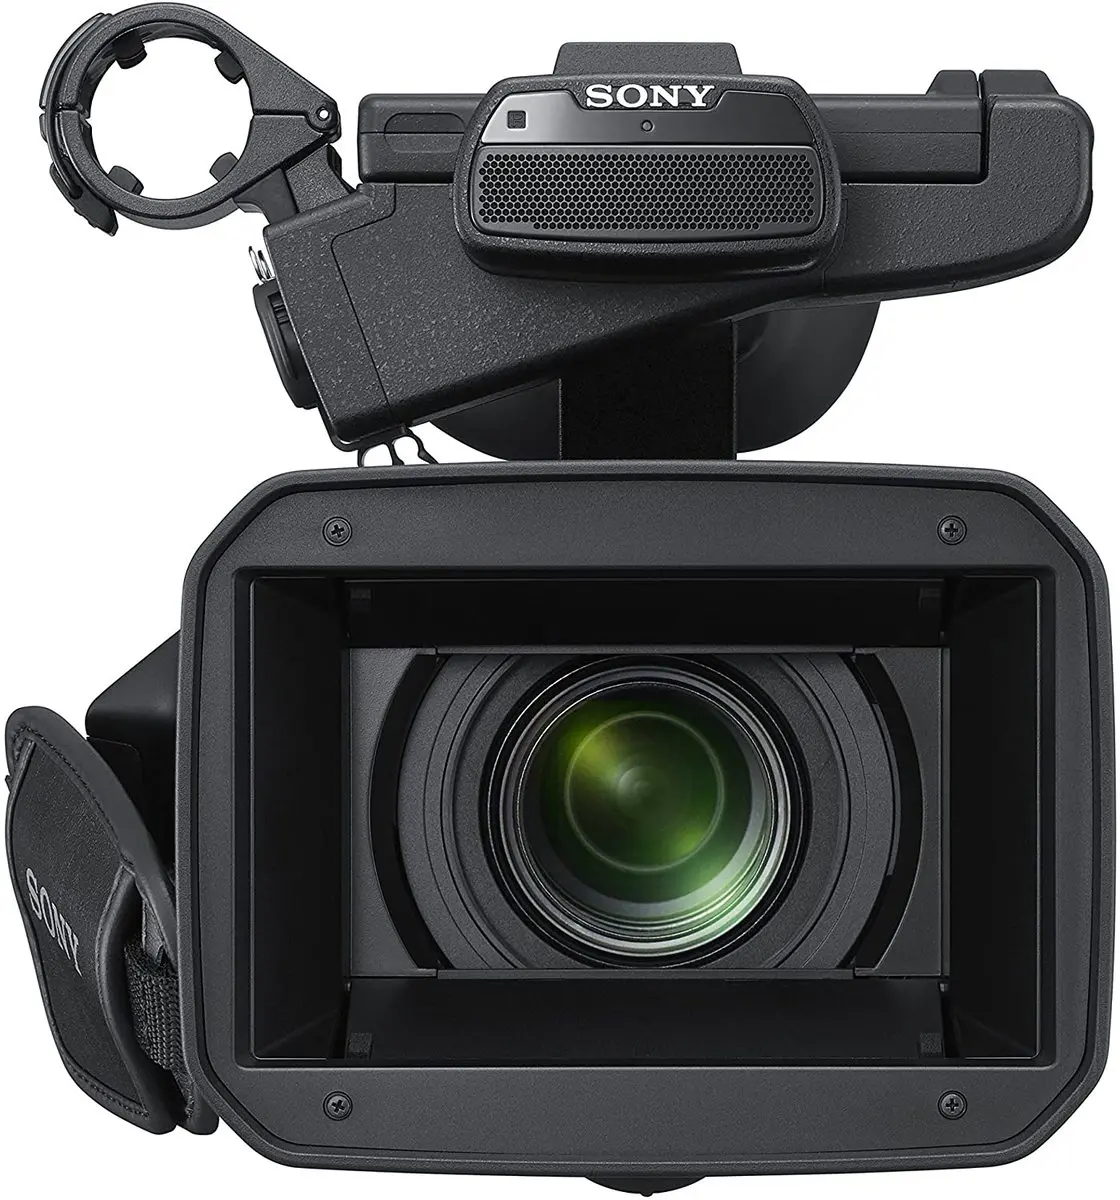 1. Sony PXW-Z150 4K XDCAM Camcorder